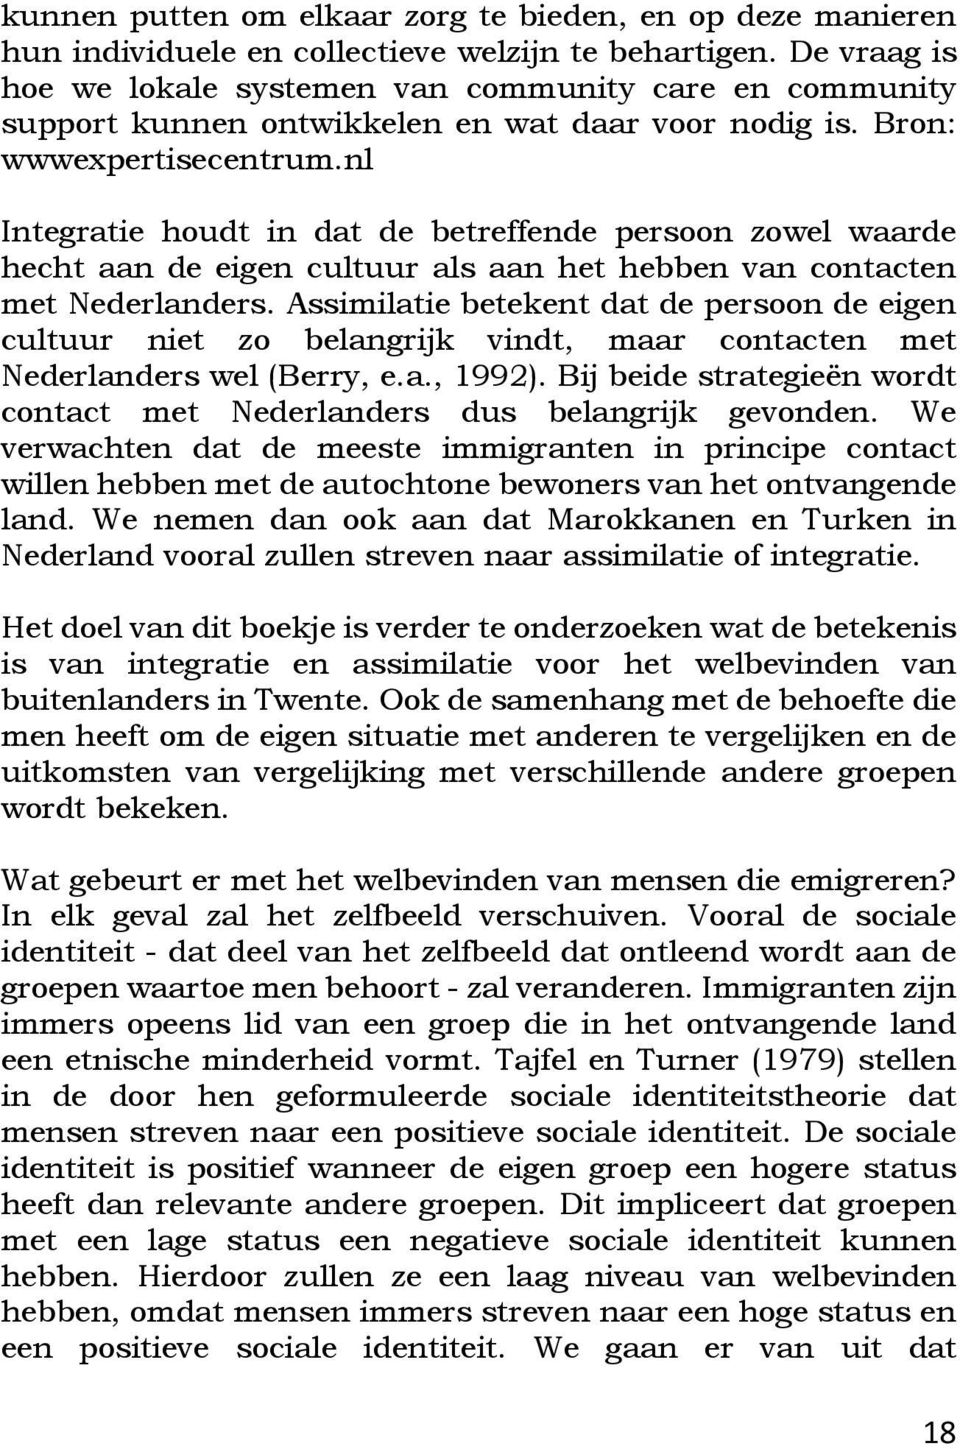 nl Integratie houdt in dat de betreffende persoon zowel waarde hecht aan de eigen cultuur als aan het hebben van contacten met Nederlanders.